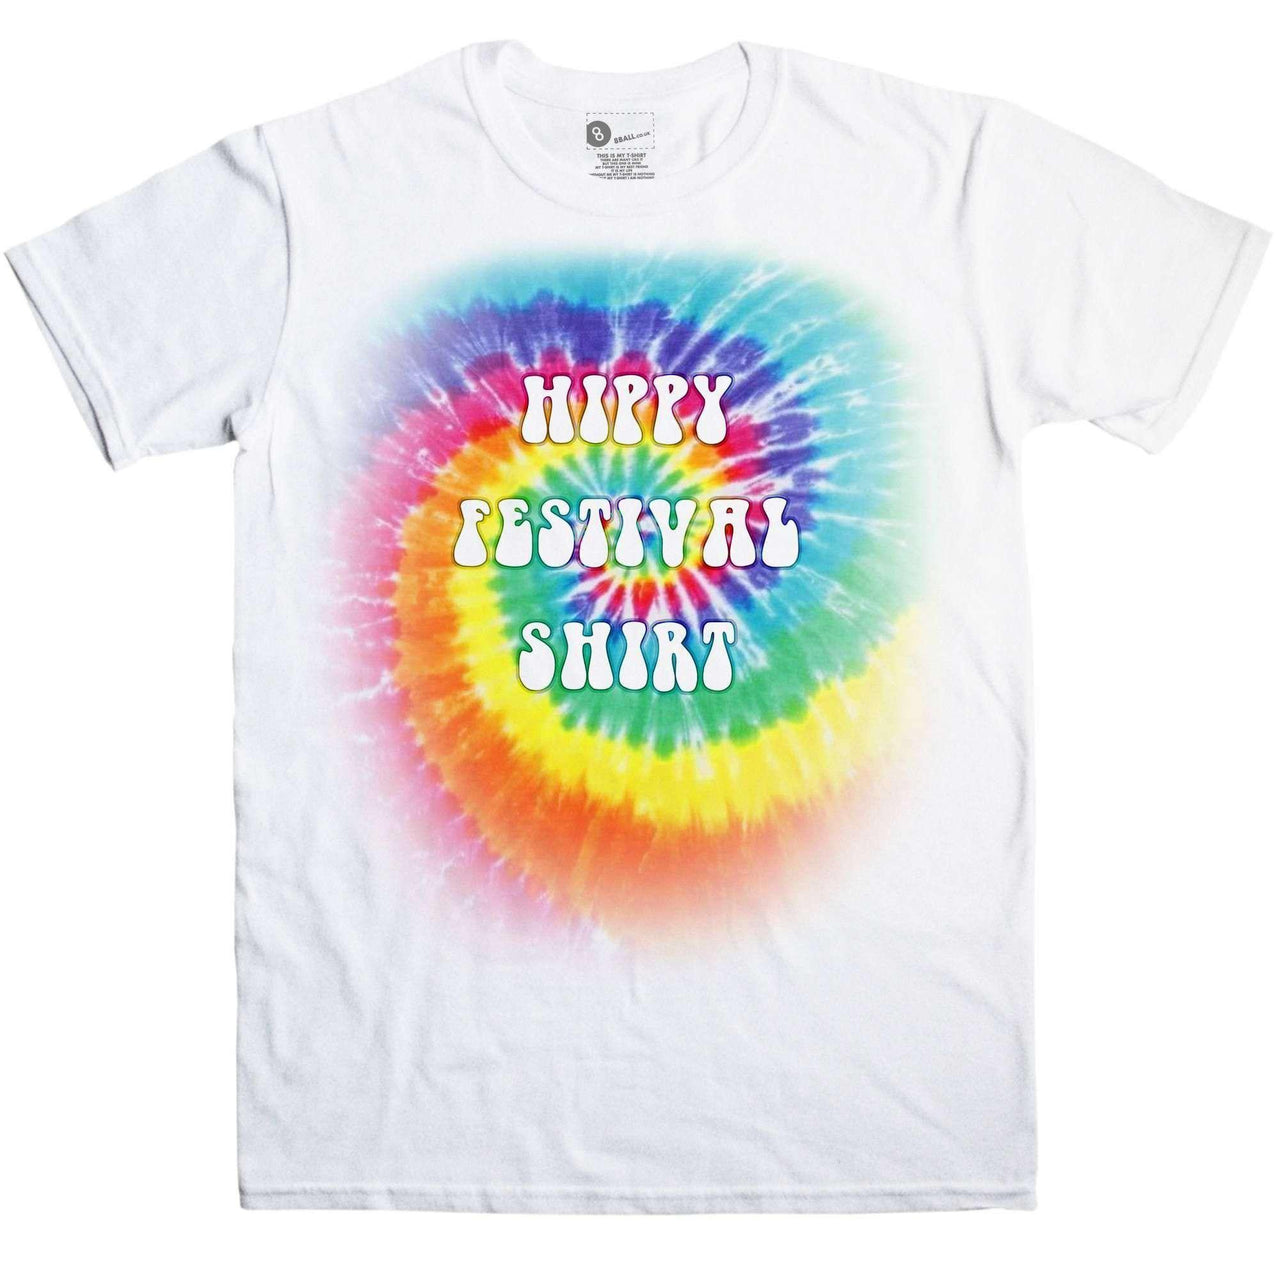 Hippy Festival Graphic T-Shirt For Men 8Ball